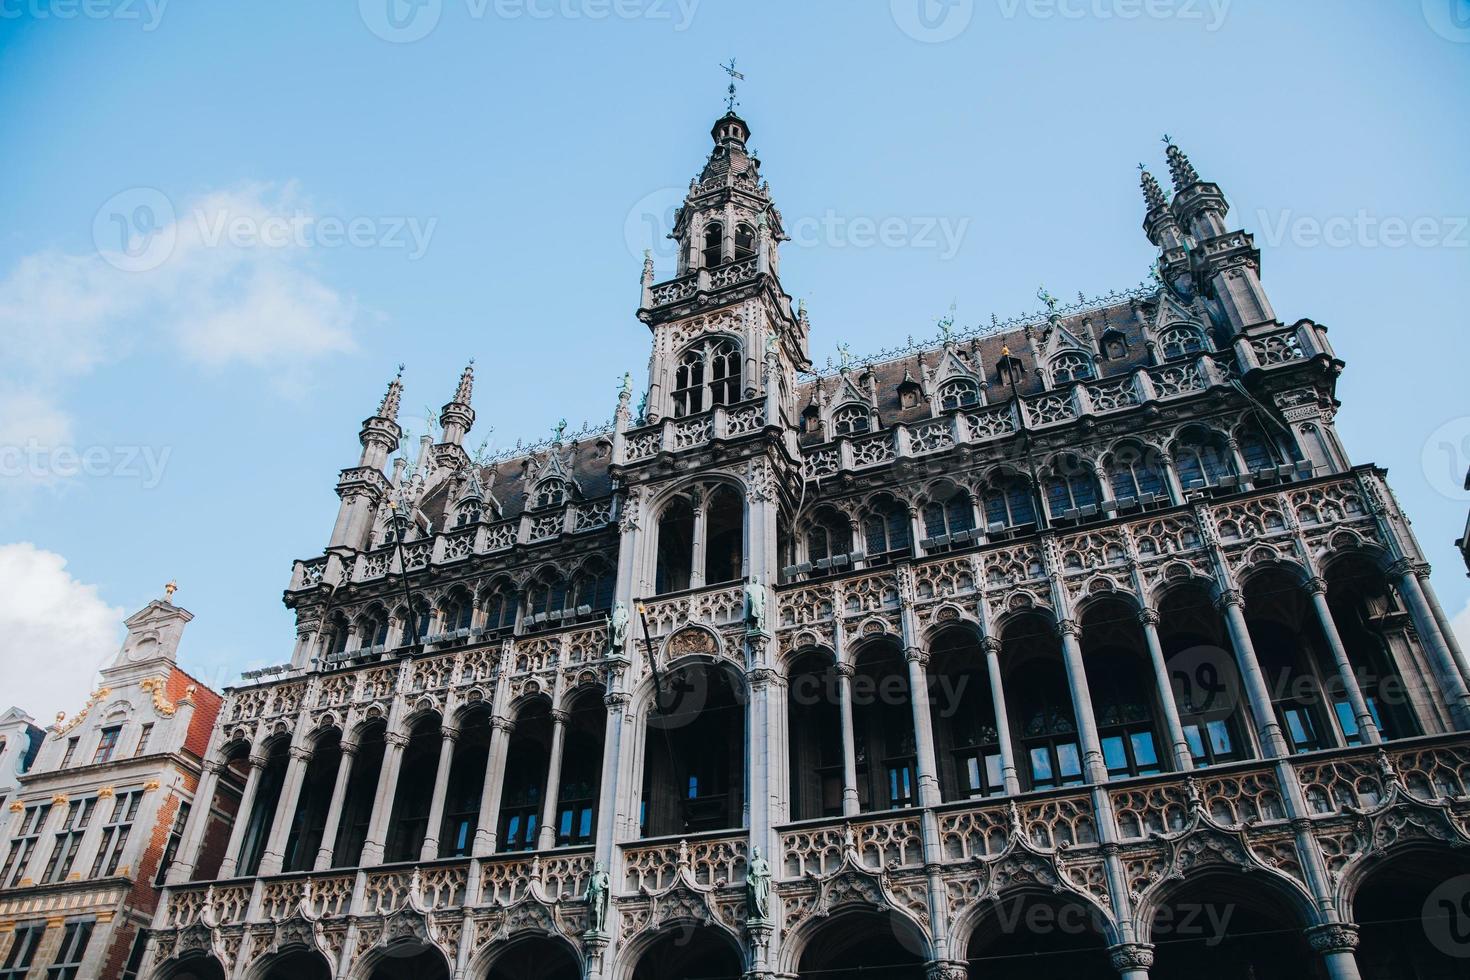 bruxelles grand palais dans la ville de bruxelles, belgique photo